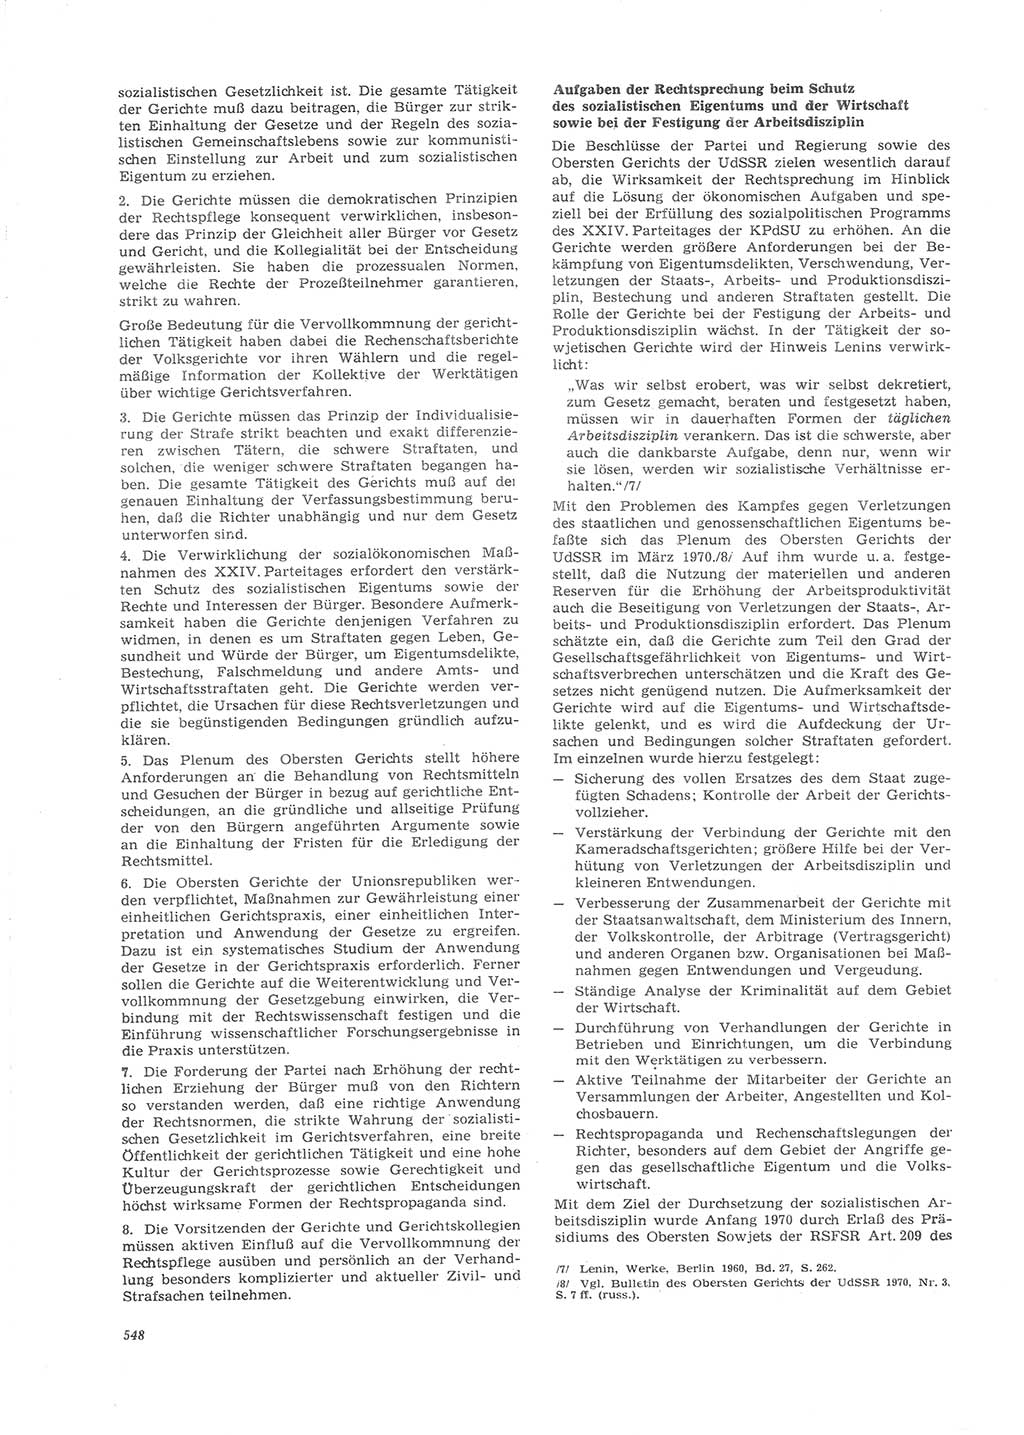 Neue Justiz (NJ), Zeitschrift für Recht und Rechtswissenschaft [Deutsche Demokratische Republik (DDR)], 26. Jahrgang 1972, Seite 548 (NJ DDR 1972, S. 548)